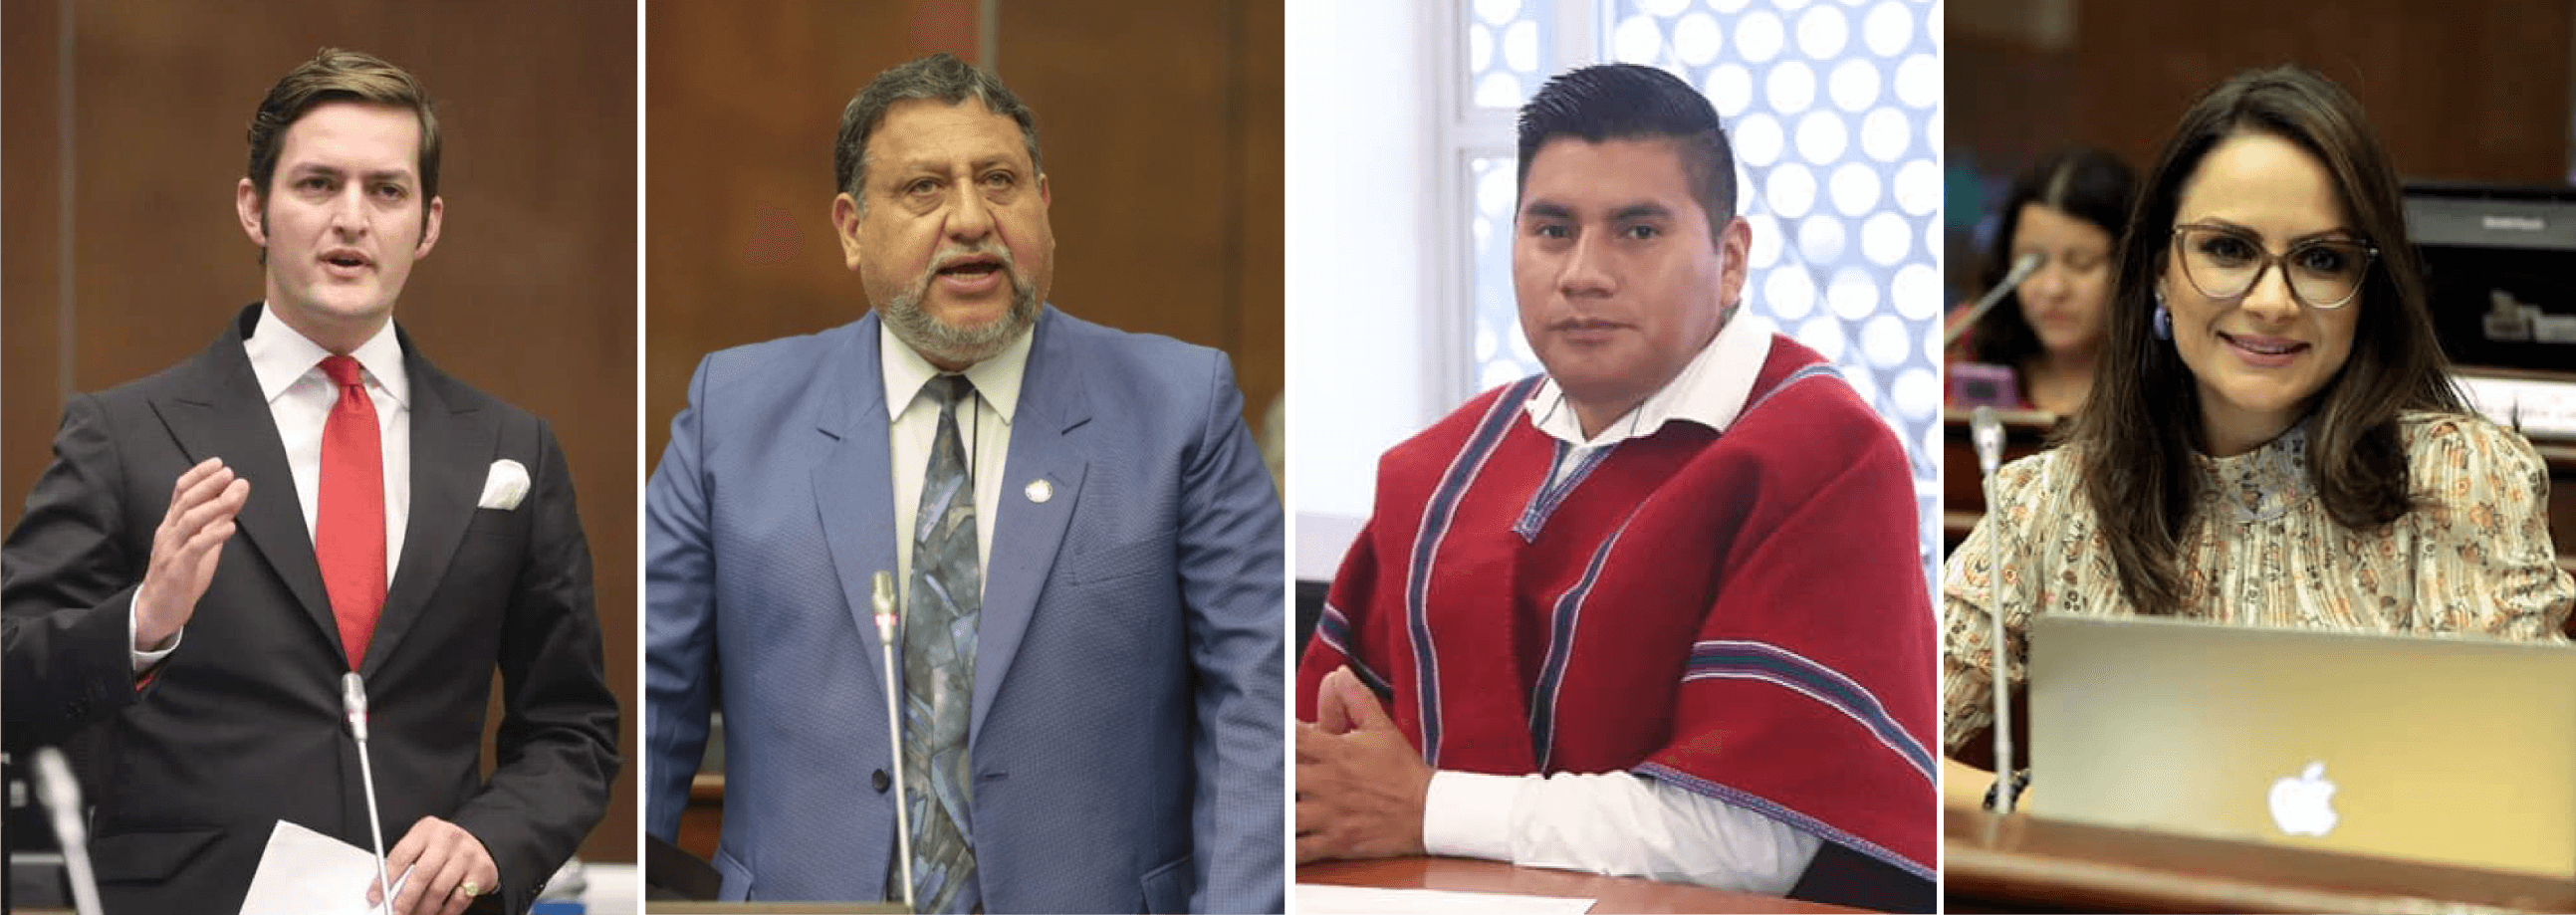 De los cuatro exlegisladores Esteban Torres y Ramiro Frías sí se postularán nuevamente a la Asamblea, mientras que las candidaturas de Cristian Yucailla y Rosa Mayorga siguen en análisis.